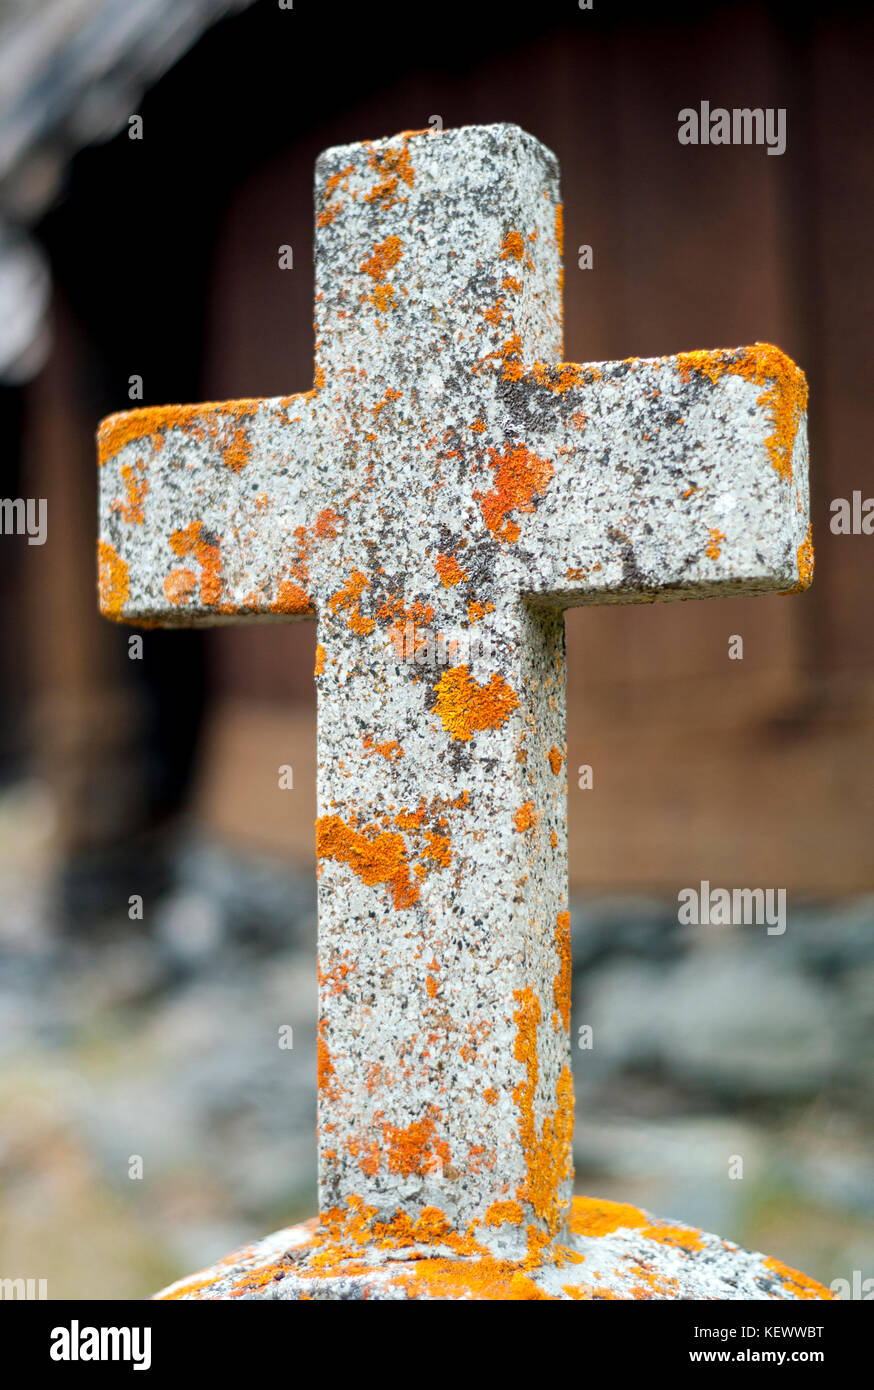 La colocación de la santa cruz en una tumba como una expresión de fe en algo, un poder superior a uno mismo, y la vida después de la muerte. Foto de stock